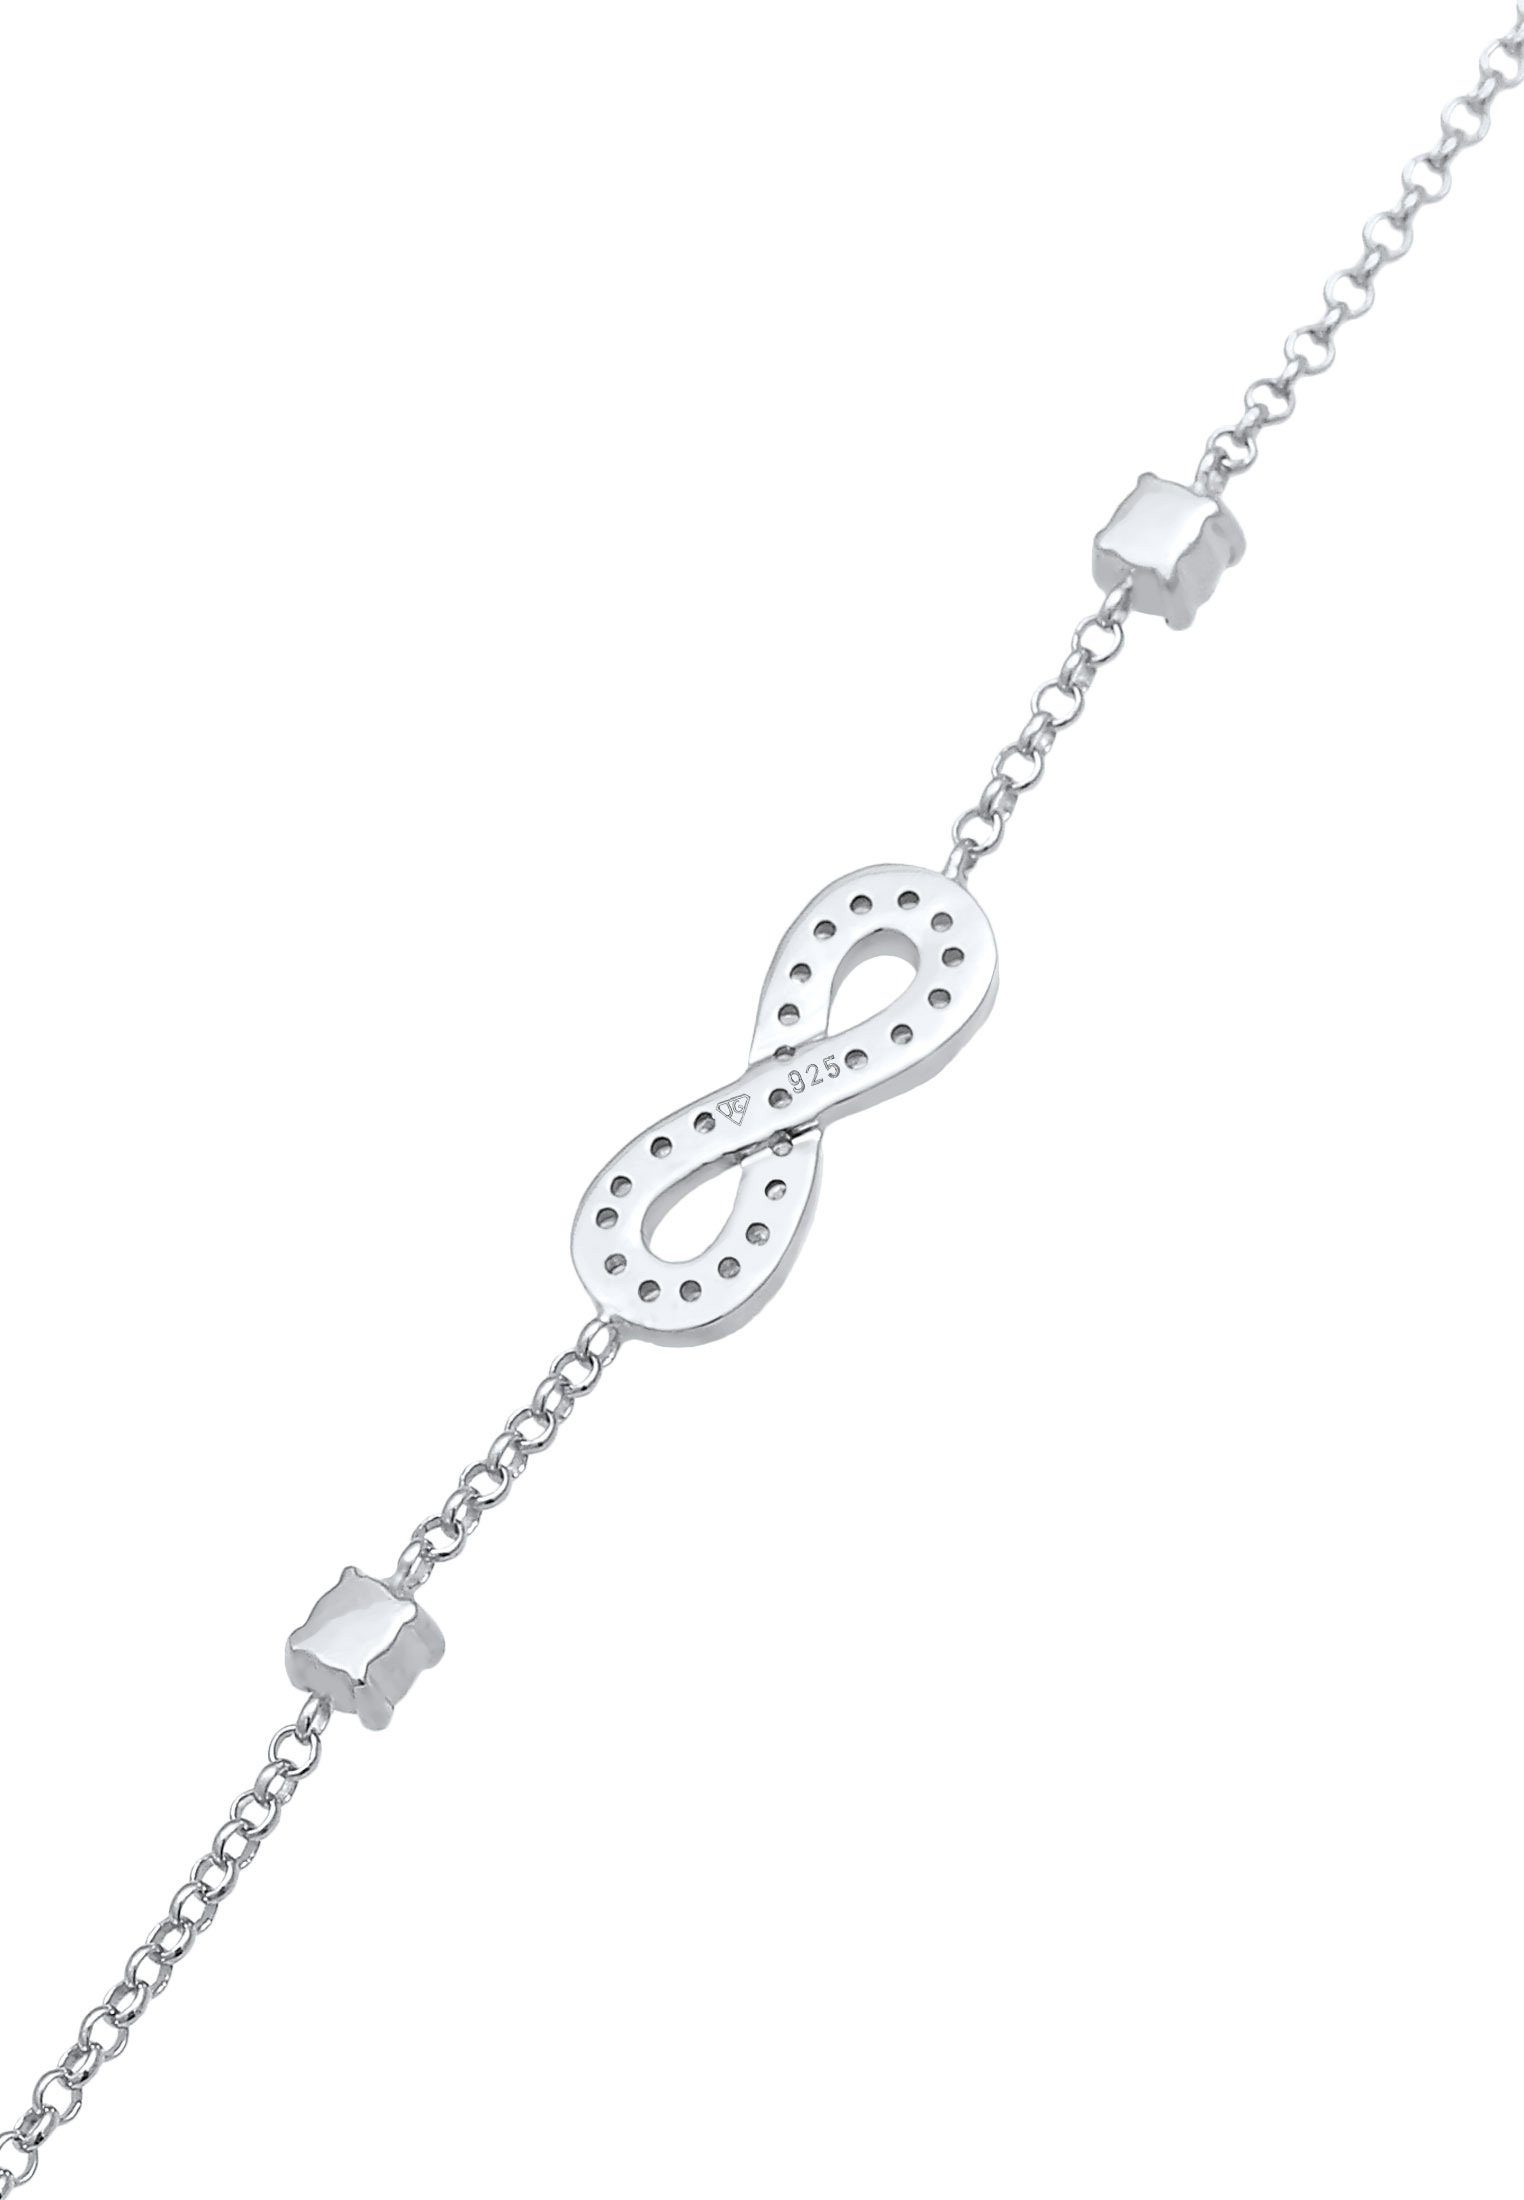 Zirkonia Nenalina 925 Silber Unendlichkeit Infinity Armband